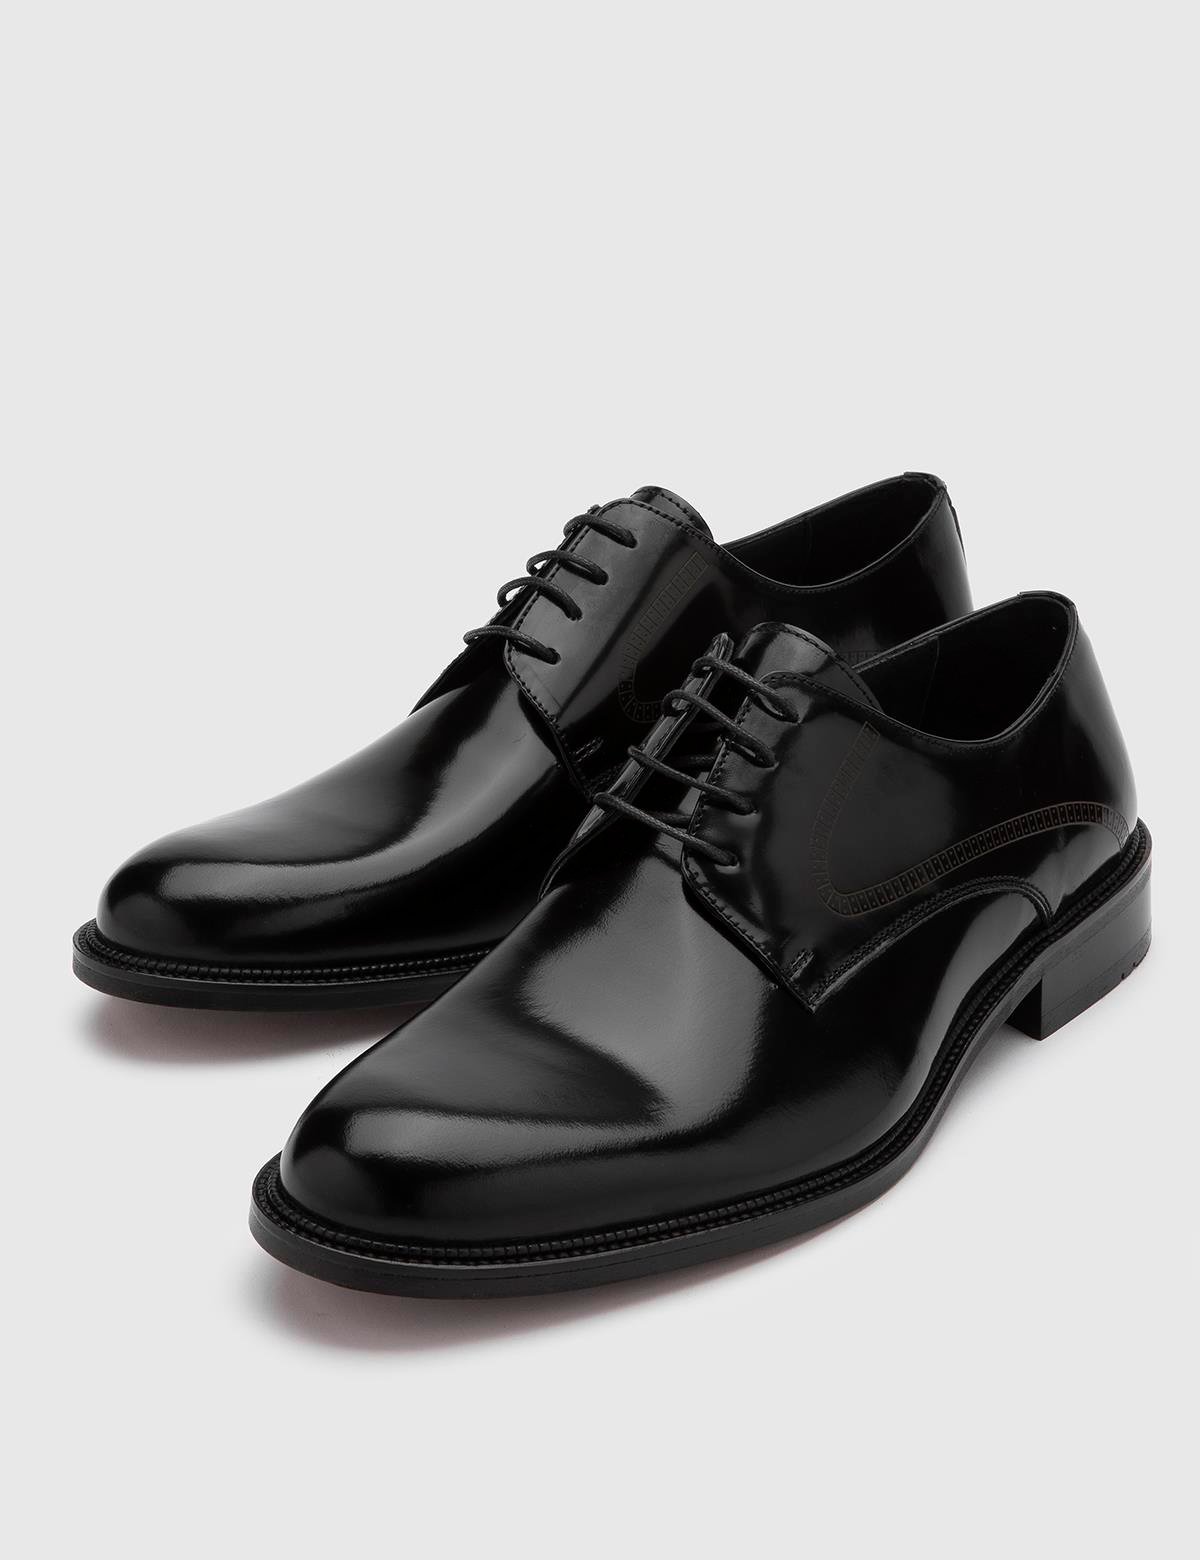 Ove Hakiki Açma Deri Erkek Siyah Klasik Ayakkabı - iLVi